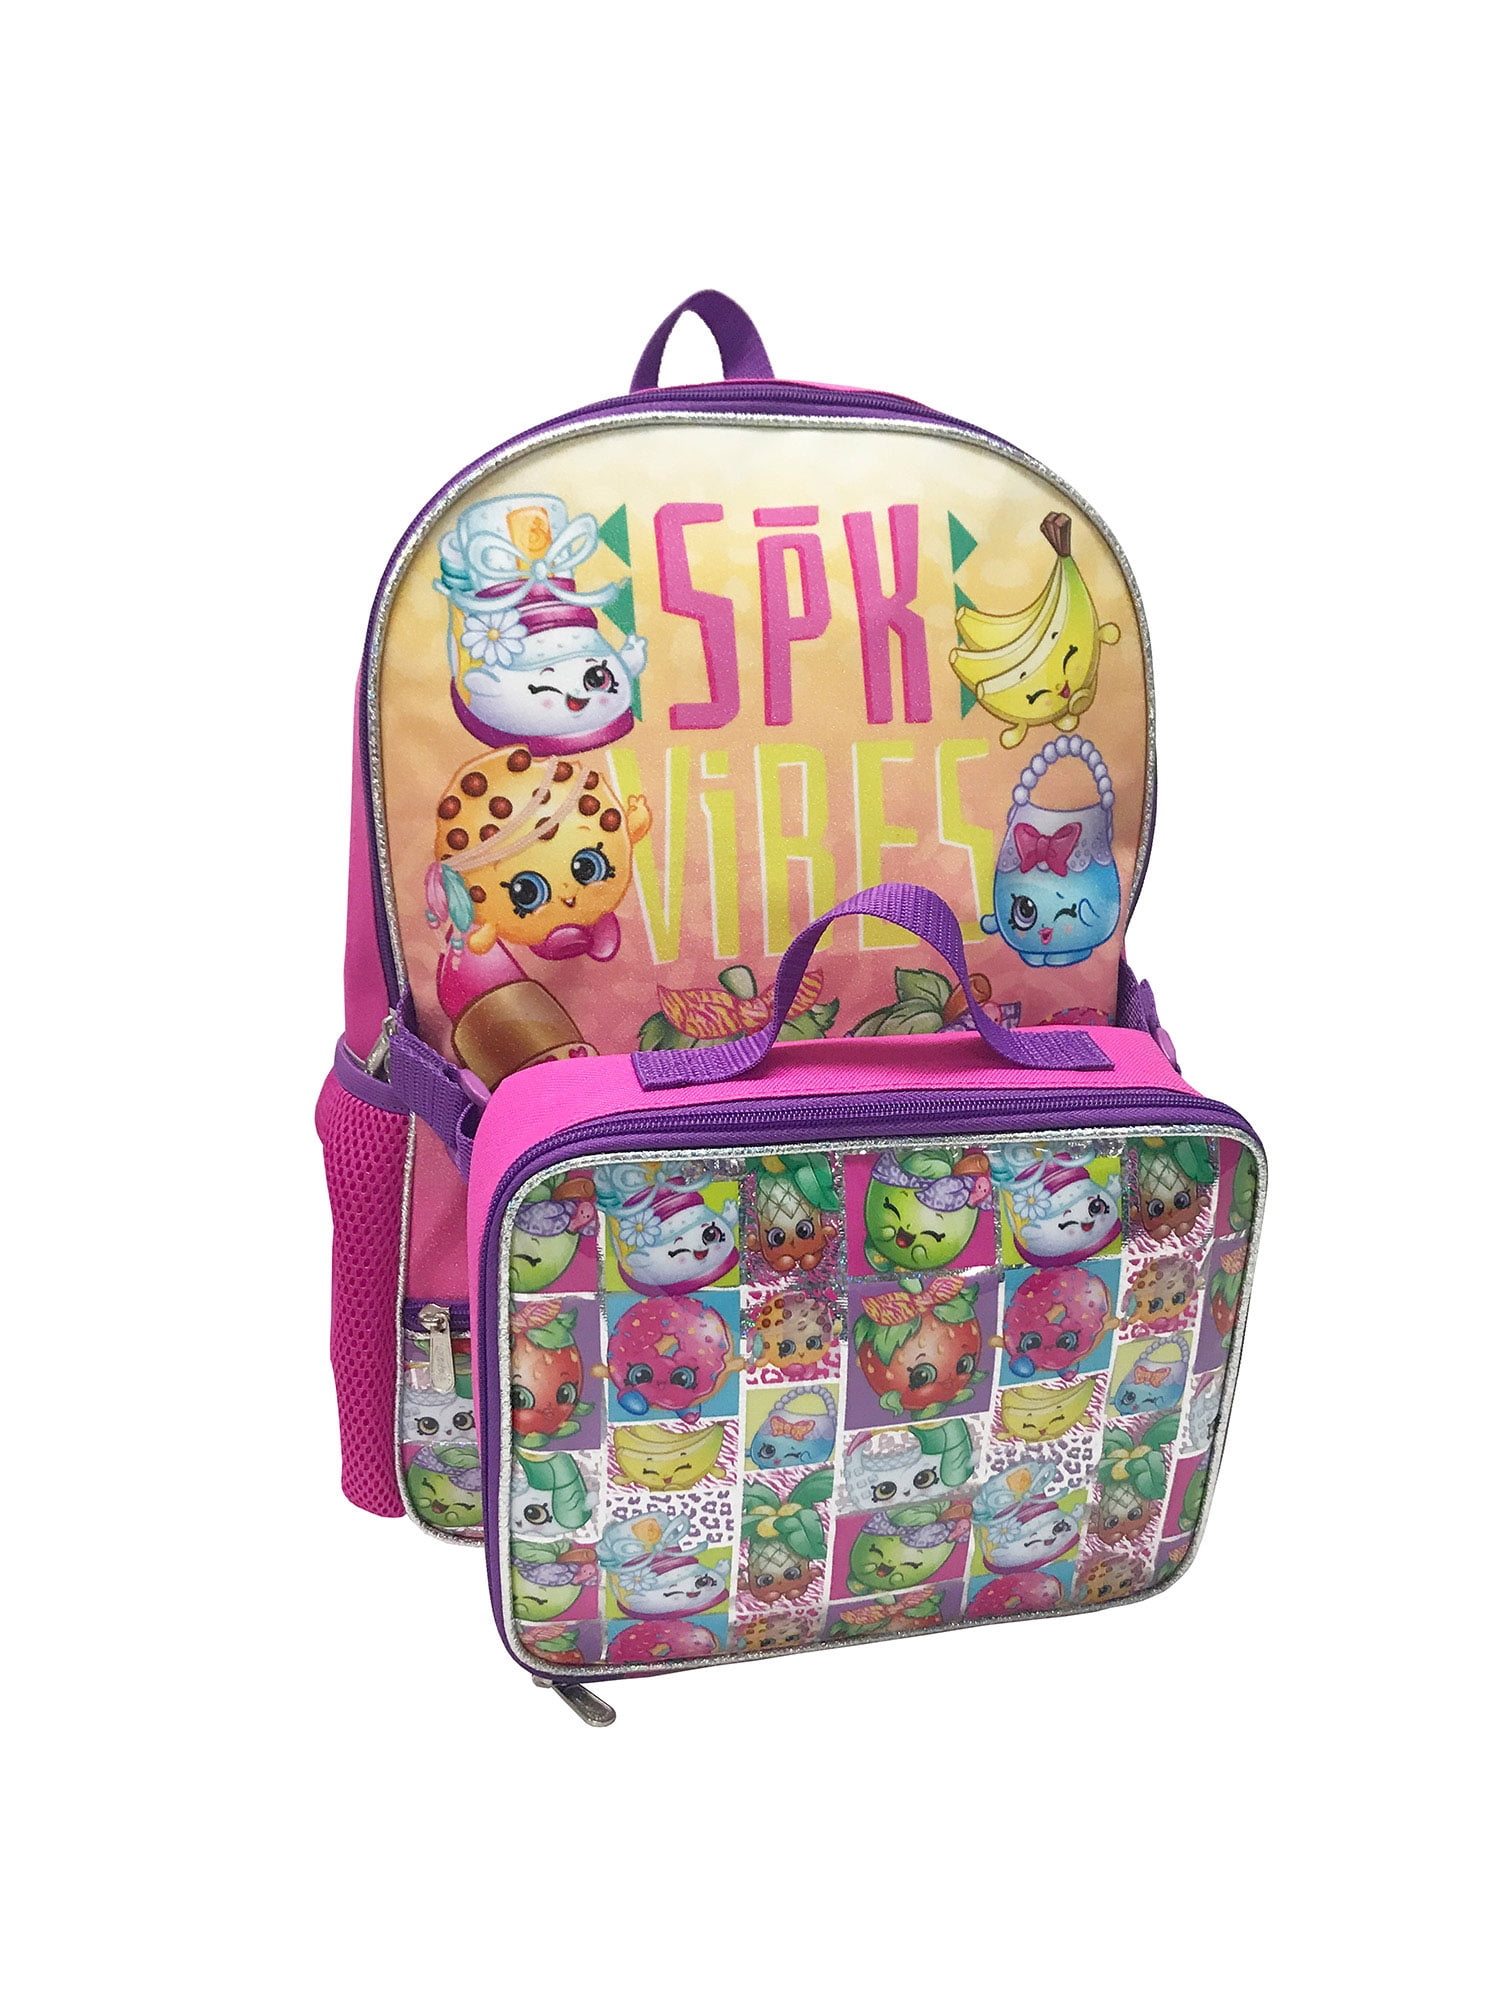 Shopkins 16" Large School Backpack Lunch Bag 2 pc Set 